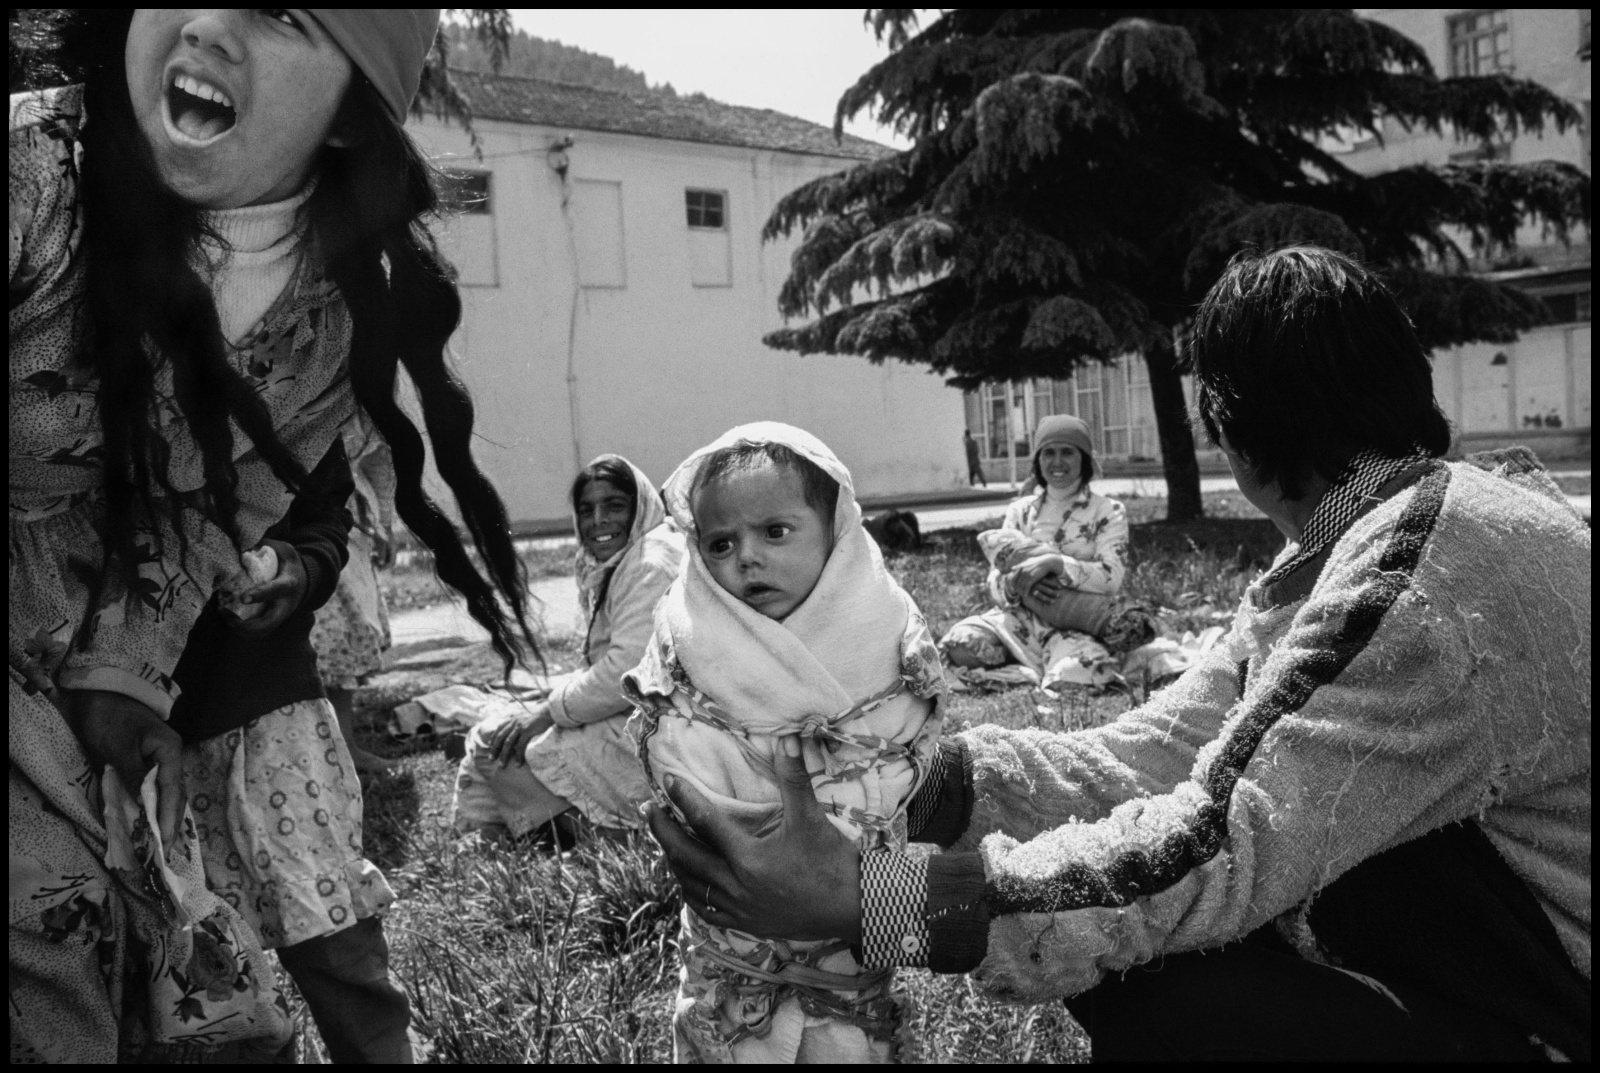 Albania 1989, il paese delle aquile, chiusa al mondo occidentale per quarantacinque anni fino alla caduta ufficiale del regime comunista nel febbraio del 1991. 
Una giovane ragazza gitana con suo figlio di pochi giorni